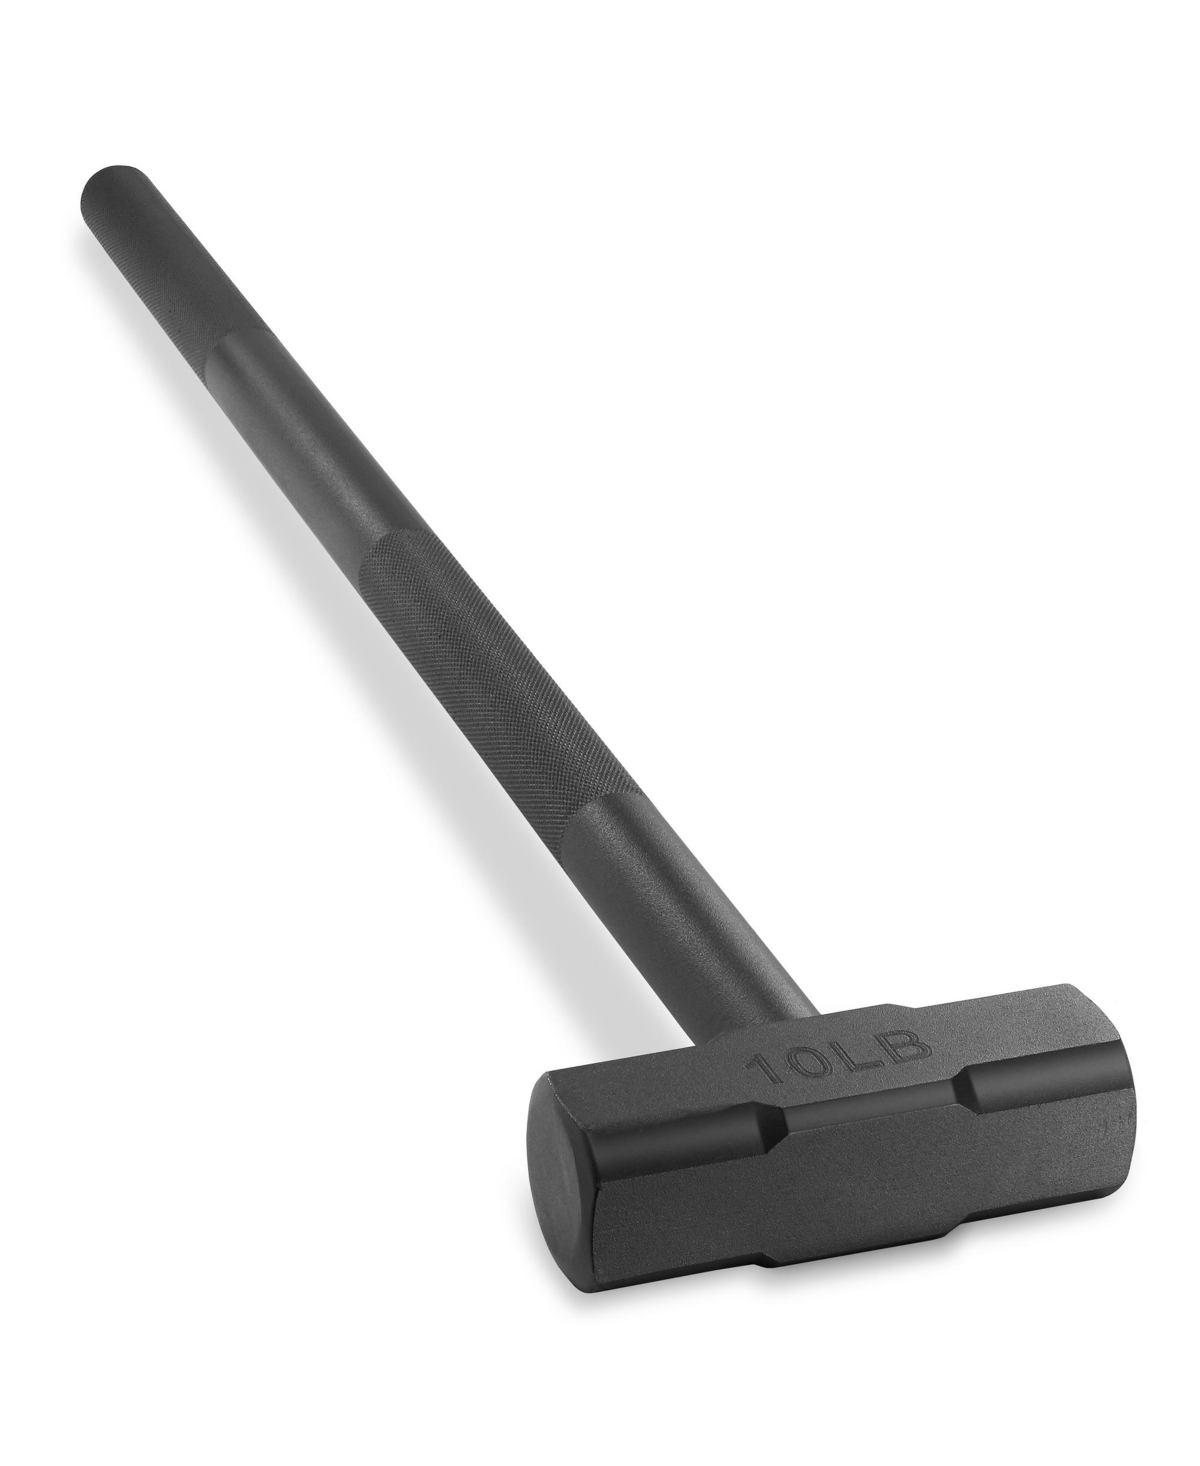 Fitness Hammer, 10 Lb - Steel Hammer for Strength Training - Black